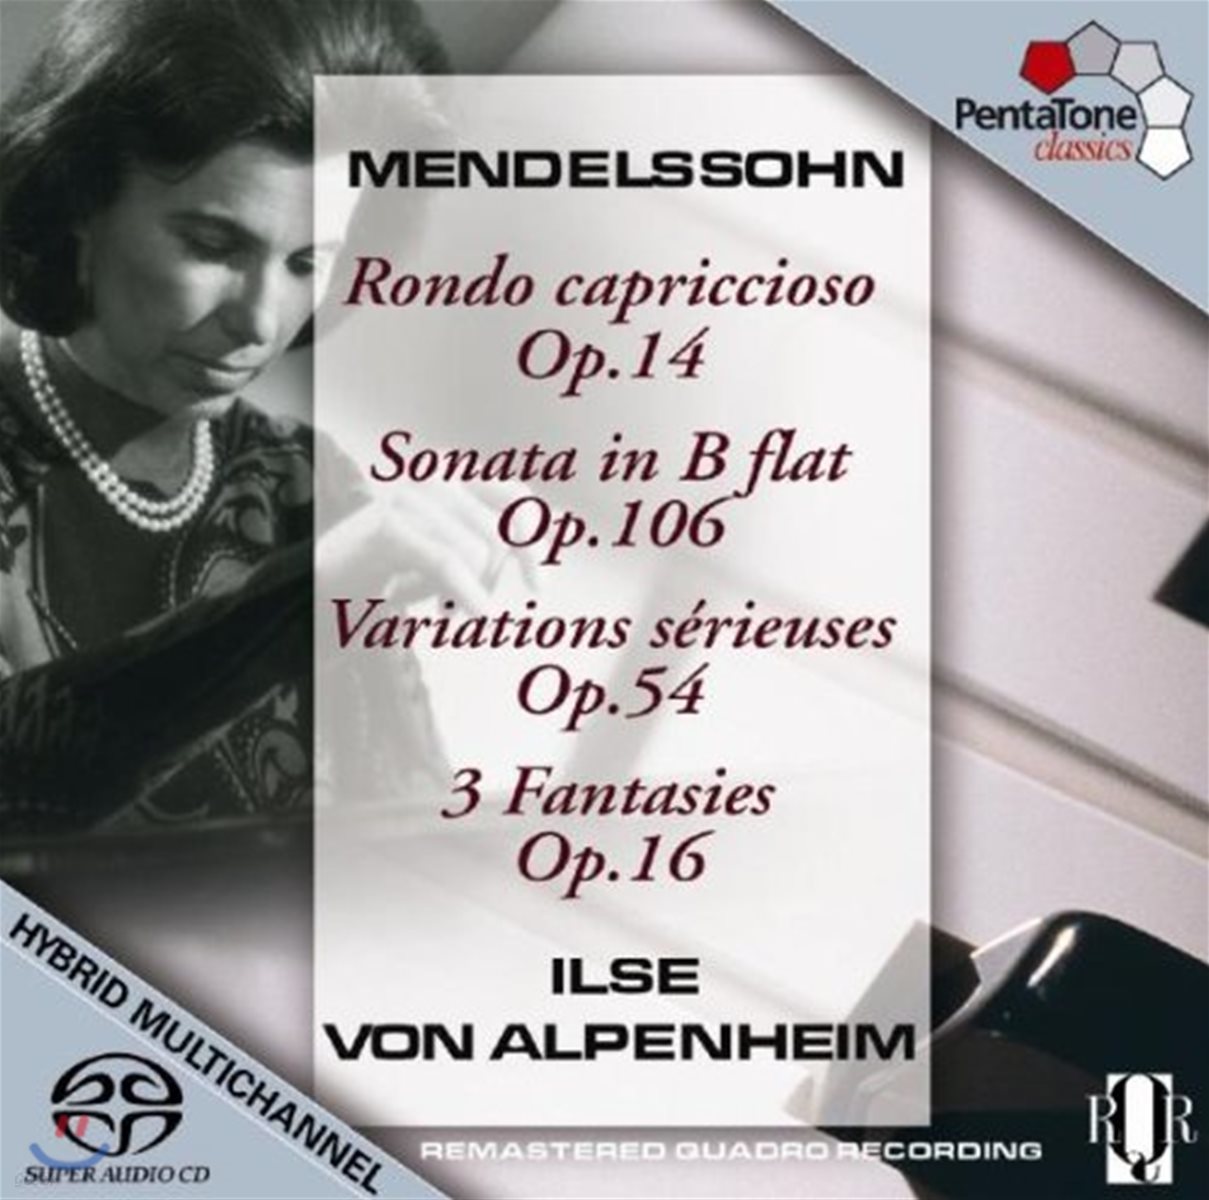 Ilse von Alpenheim 멘델스존: 피아노 곡집 - 론도 카프리치오, 소나타 외 (Mendelssohn: Rondo Capriccioso Op.14 Etc)